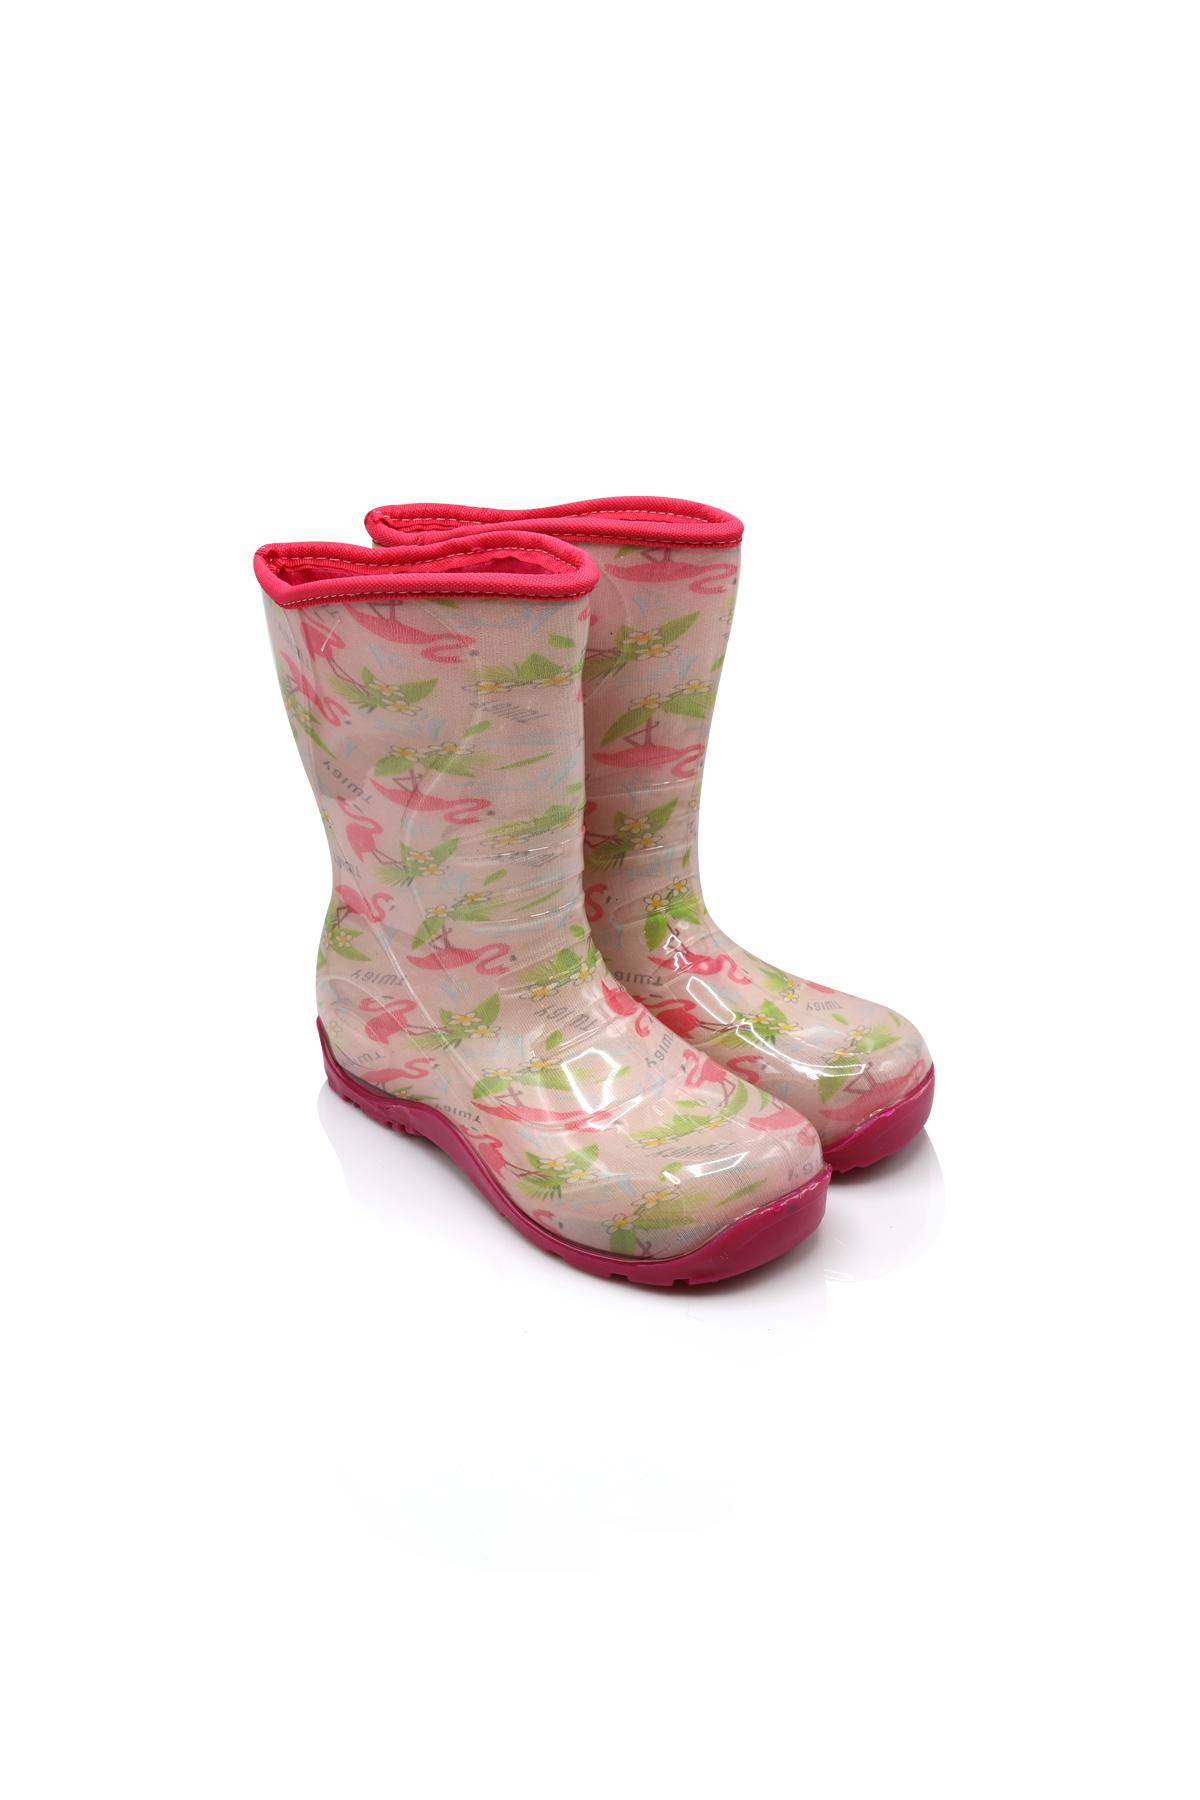 TWIGY Dečije čizme za kišu Flamingo